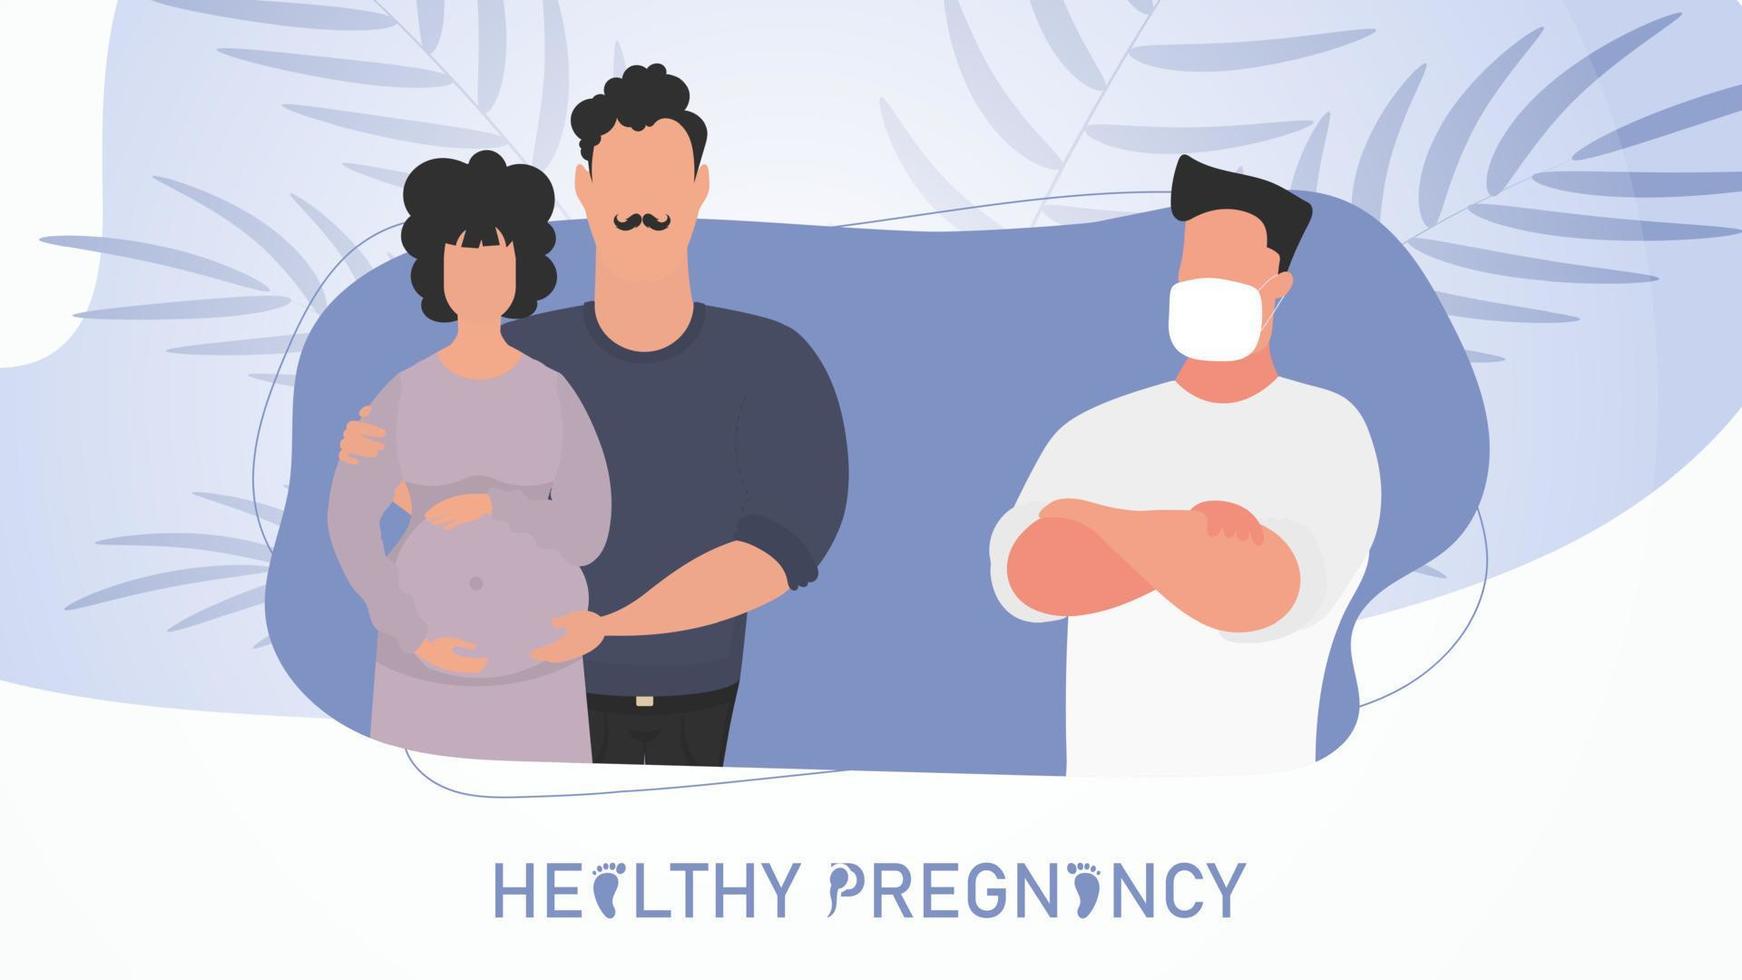 gesund Schwangerschaft Poster. ein verheiratet Paar beim ein Arzt Termin. Vektor Illustration.